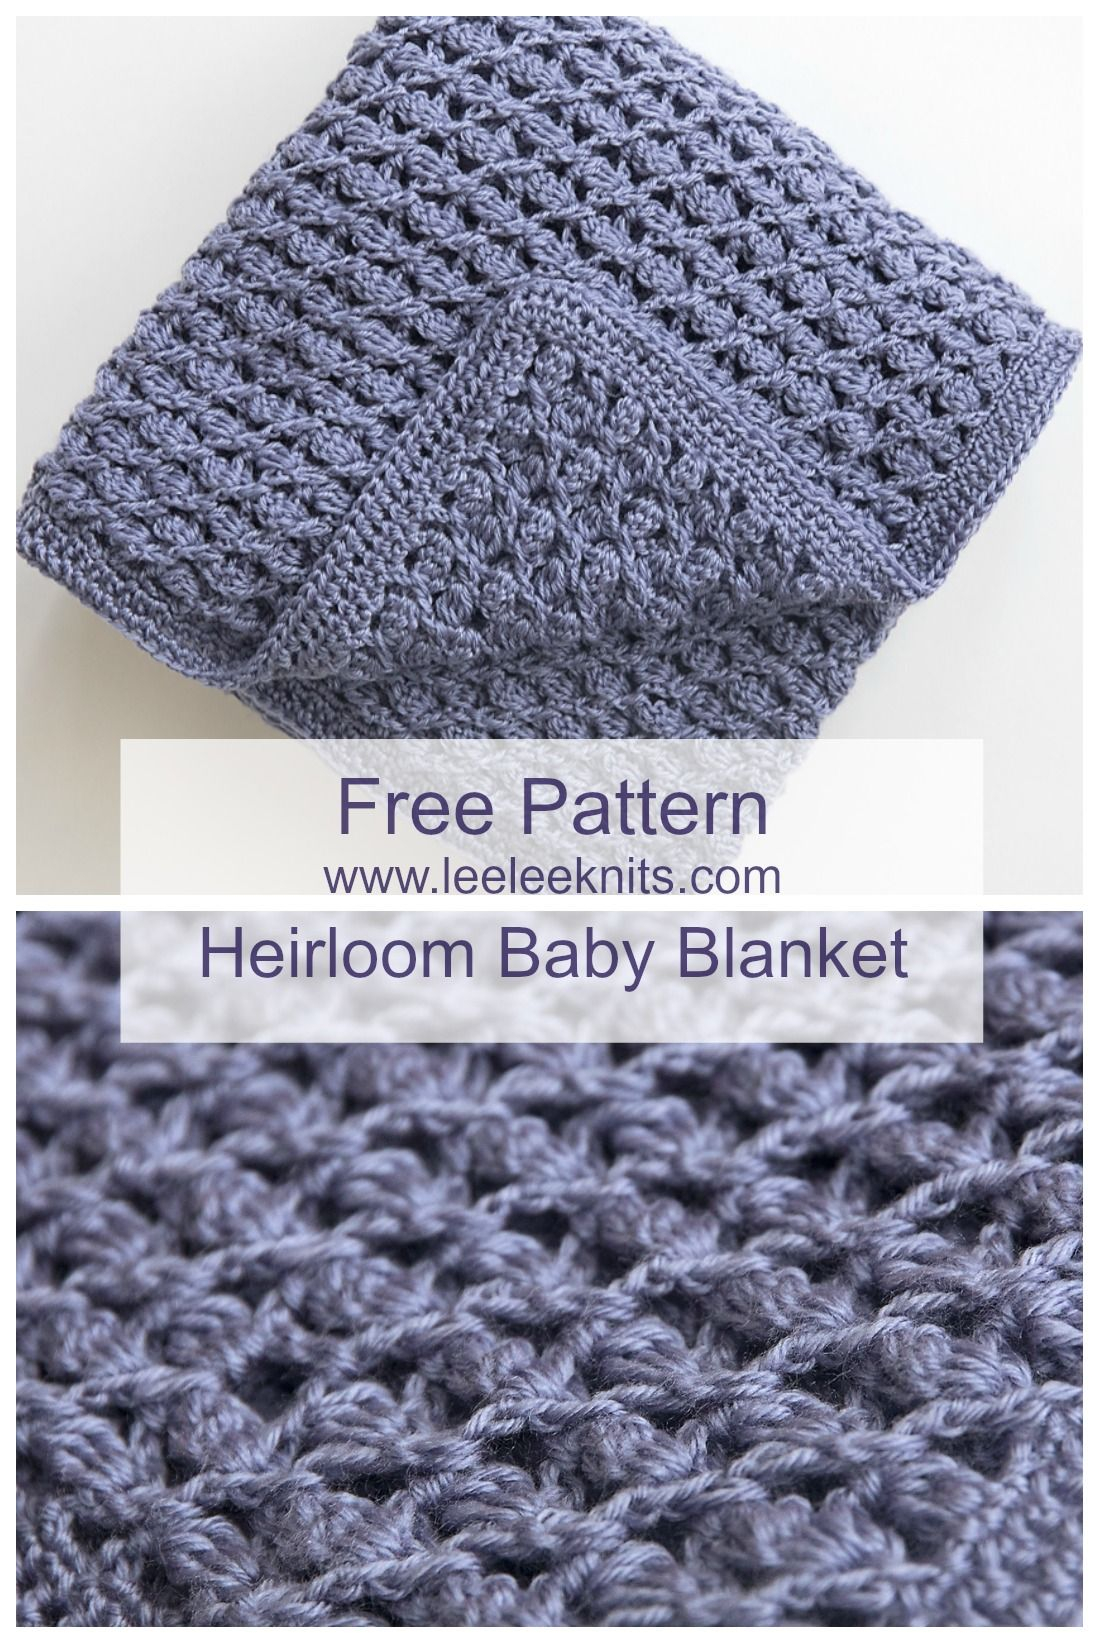 Crochet Baby Blanket Free Pattern Free Heirloom Ba Blanket Crochet Pattern Crochet Pinterest